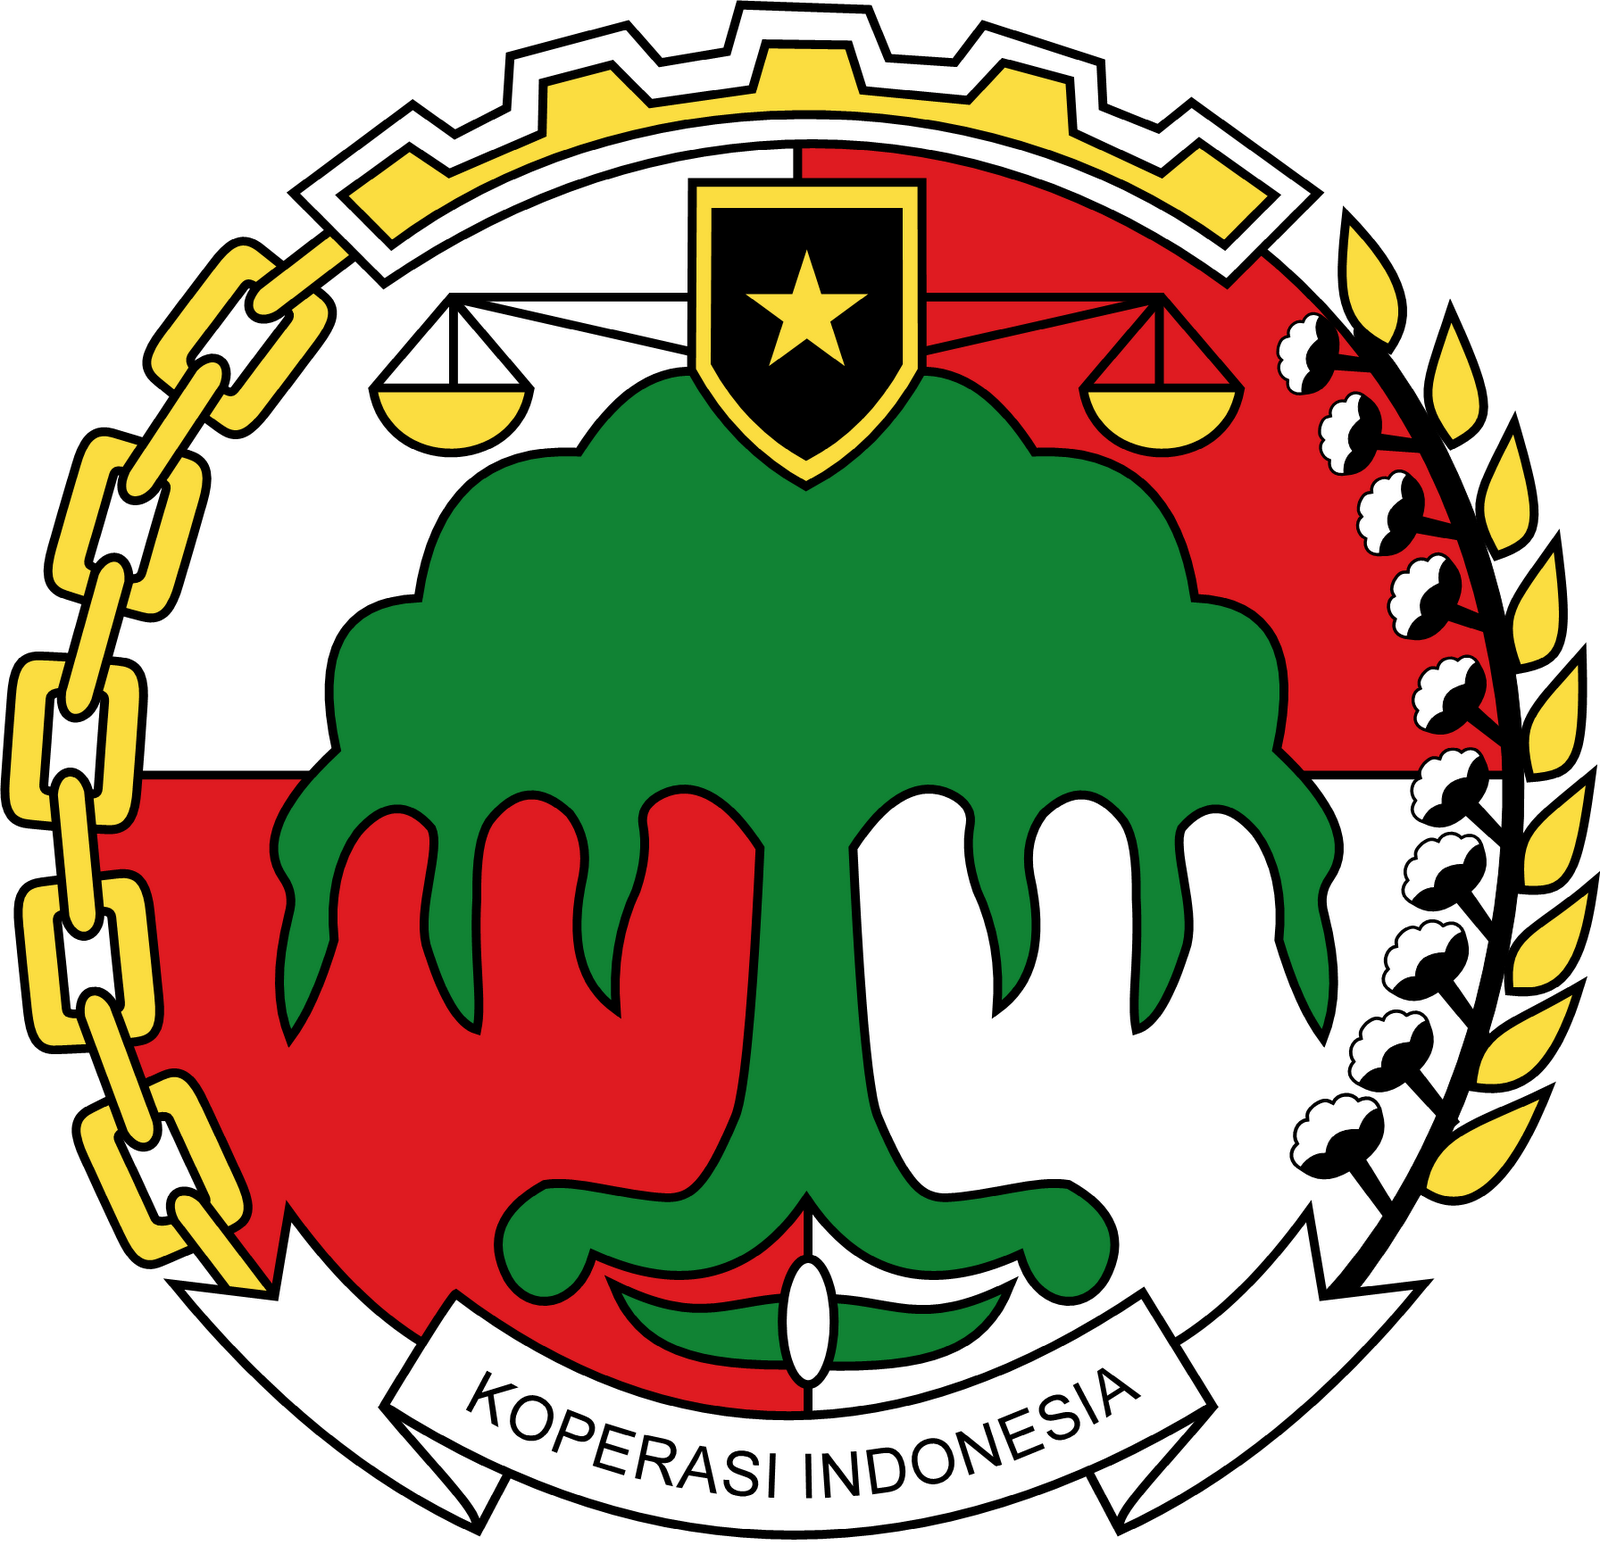 LOGO KOPERASI INDONESIA